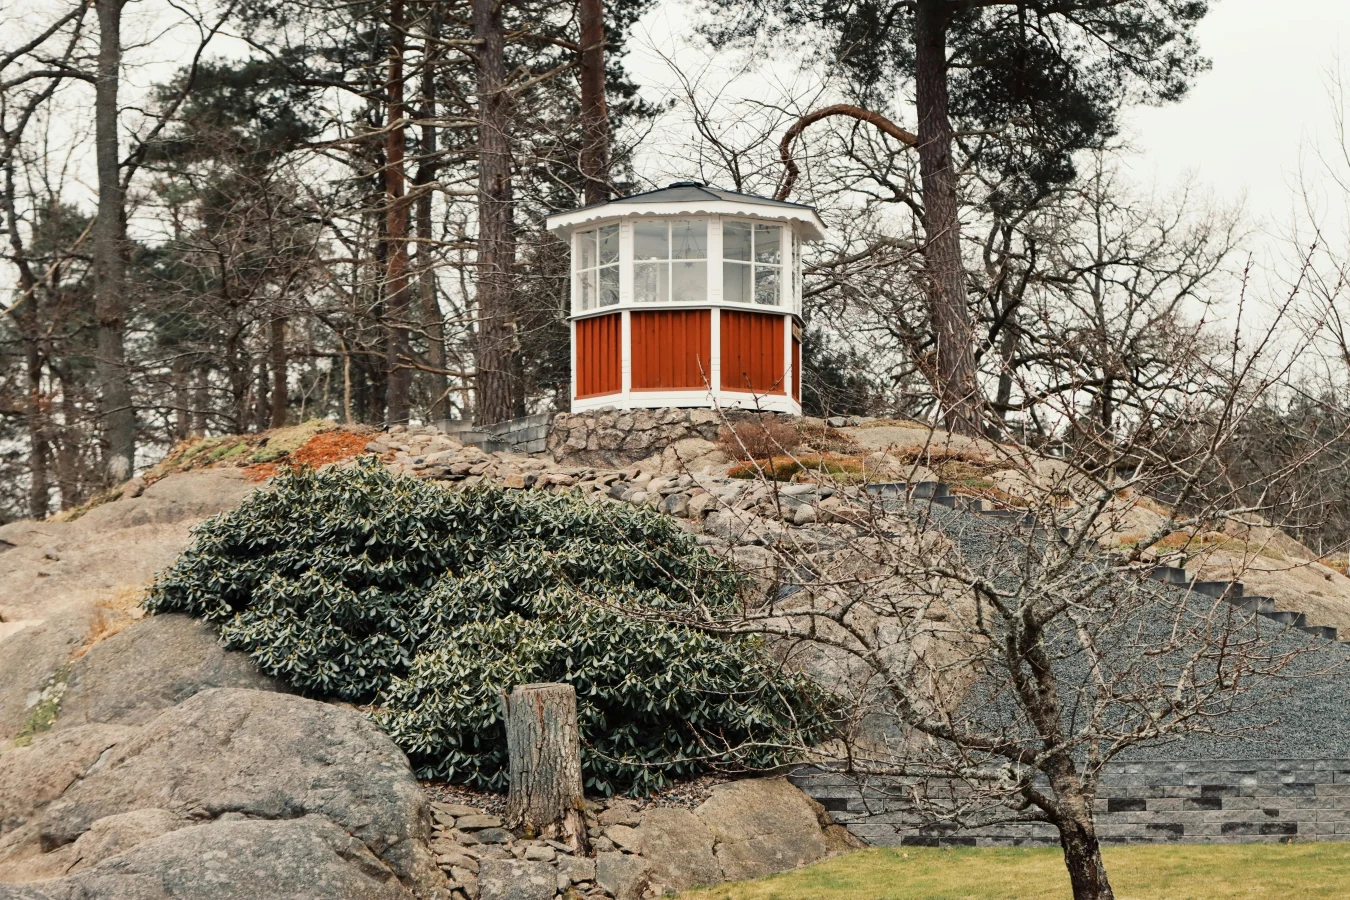 Elementy małej architektury w ogrodzie skandynawskim łagodnie harmonizują z ukształtowaniem terenu.